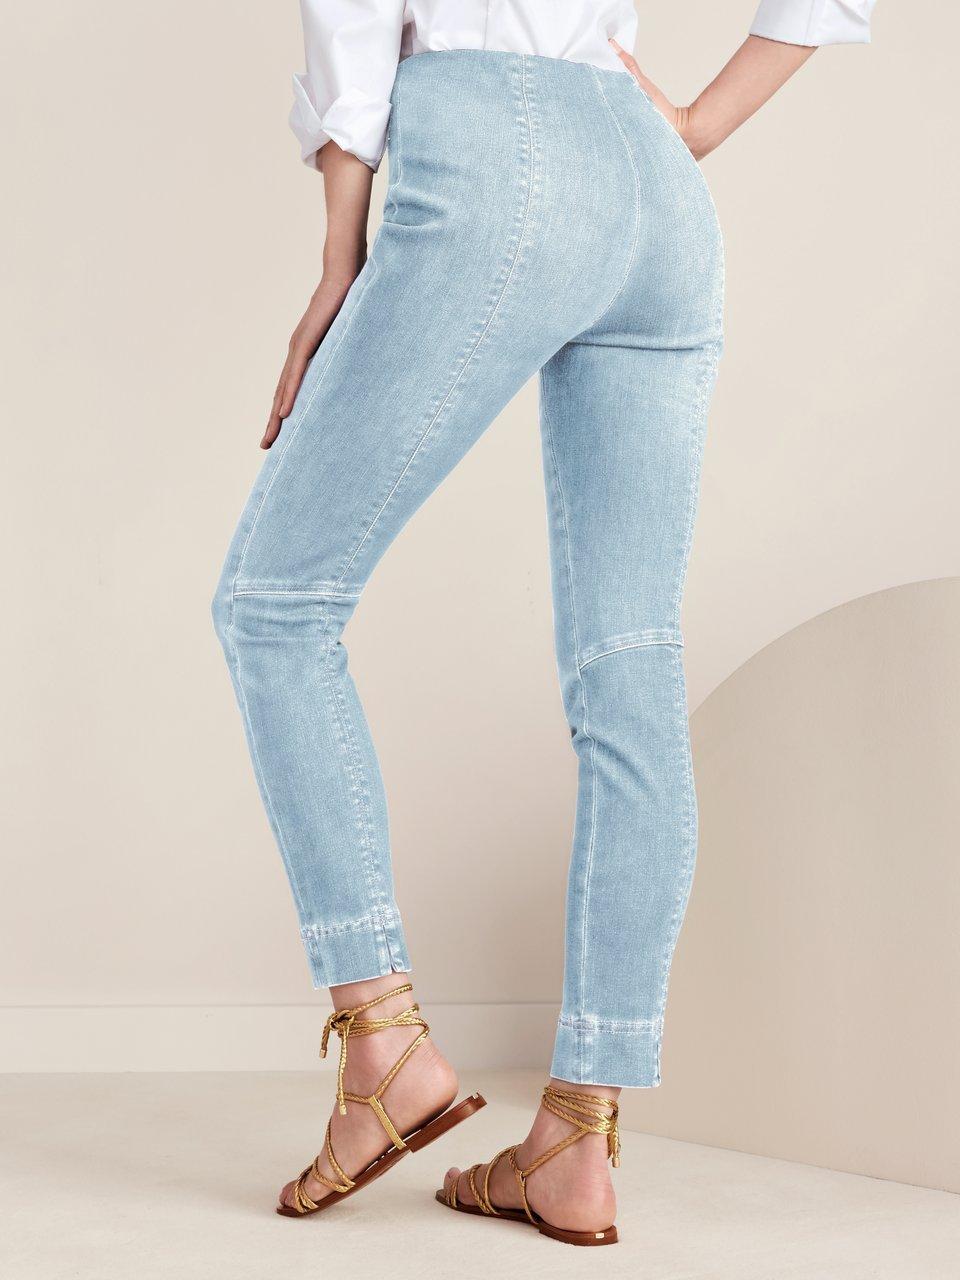 Raffaello Rossi - Knöchellange Jeans Modell Penny